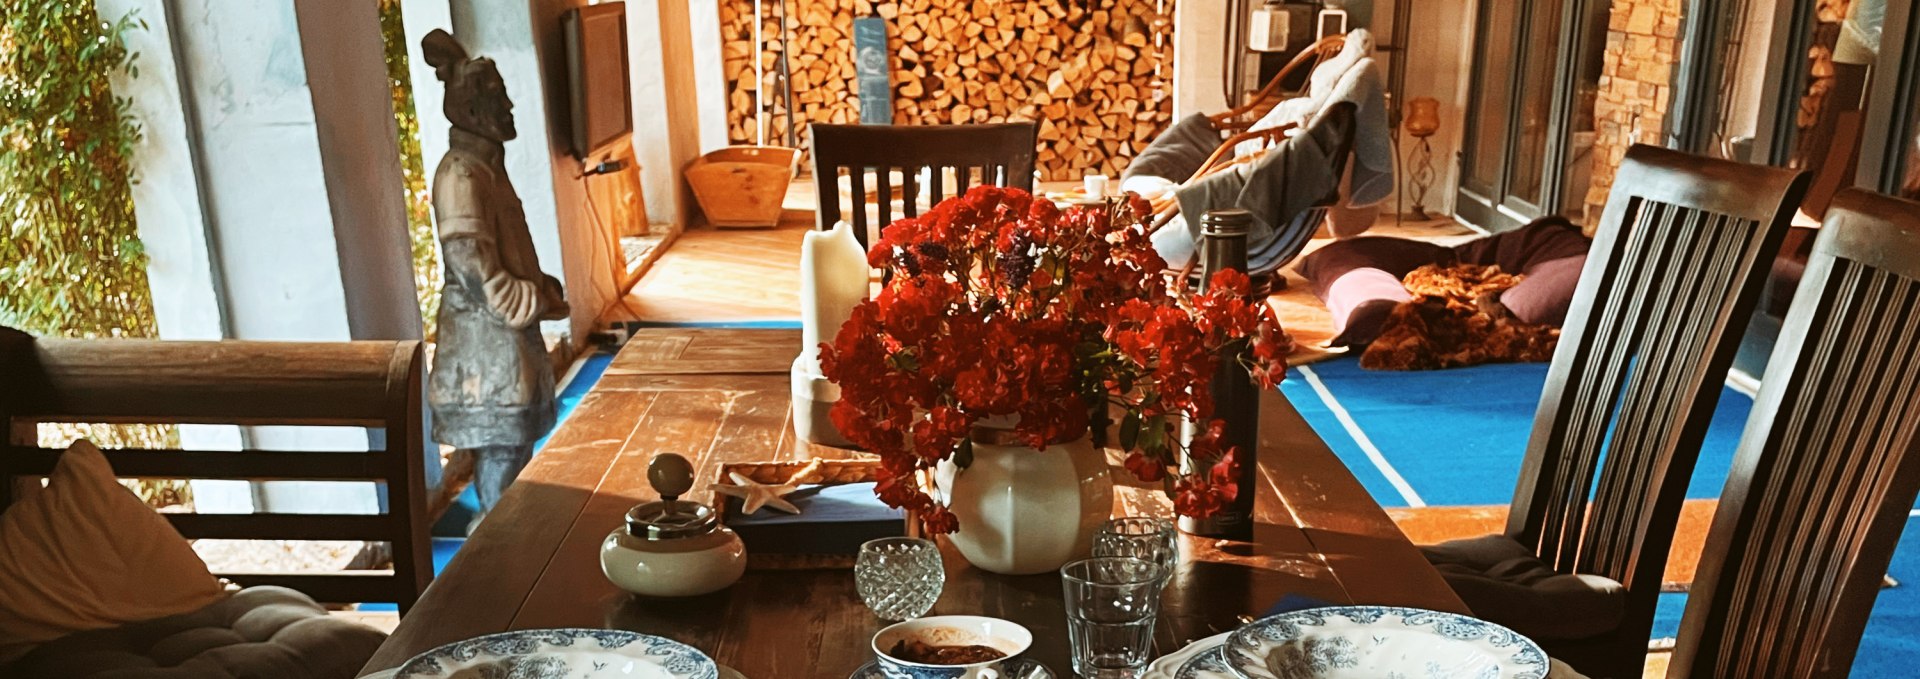 Großer Tisch mit viel Platz für gemeinsame Mahlzeiten im Gutshaus Boldekow, © Gutshaus Boldekow / Anja Thonig